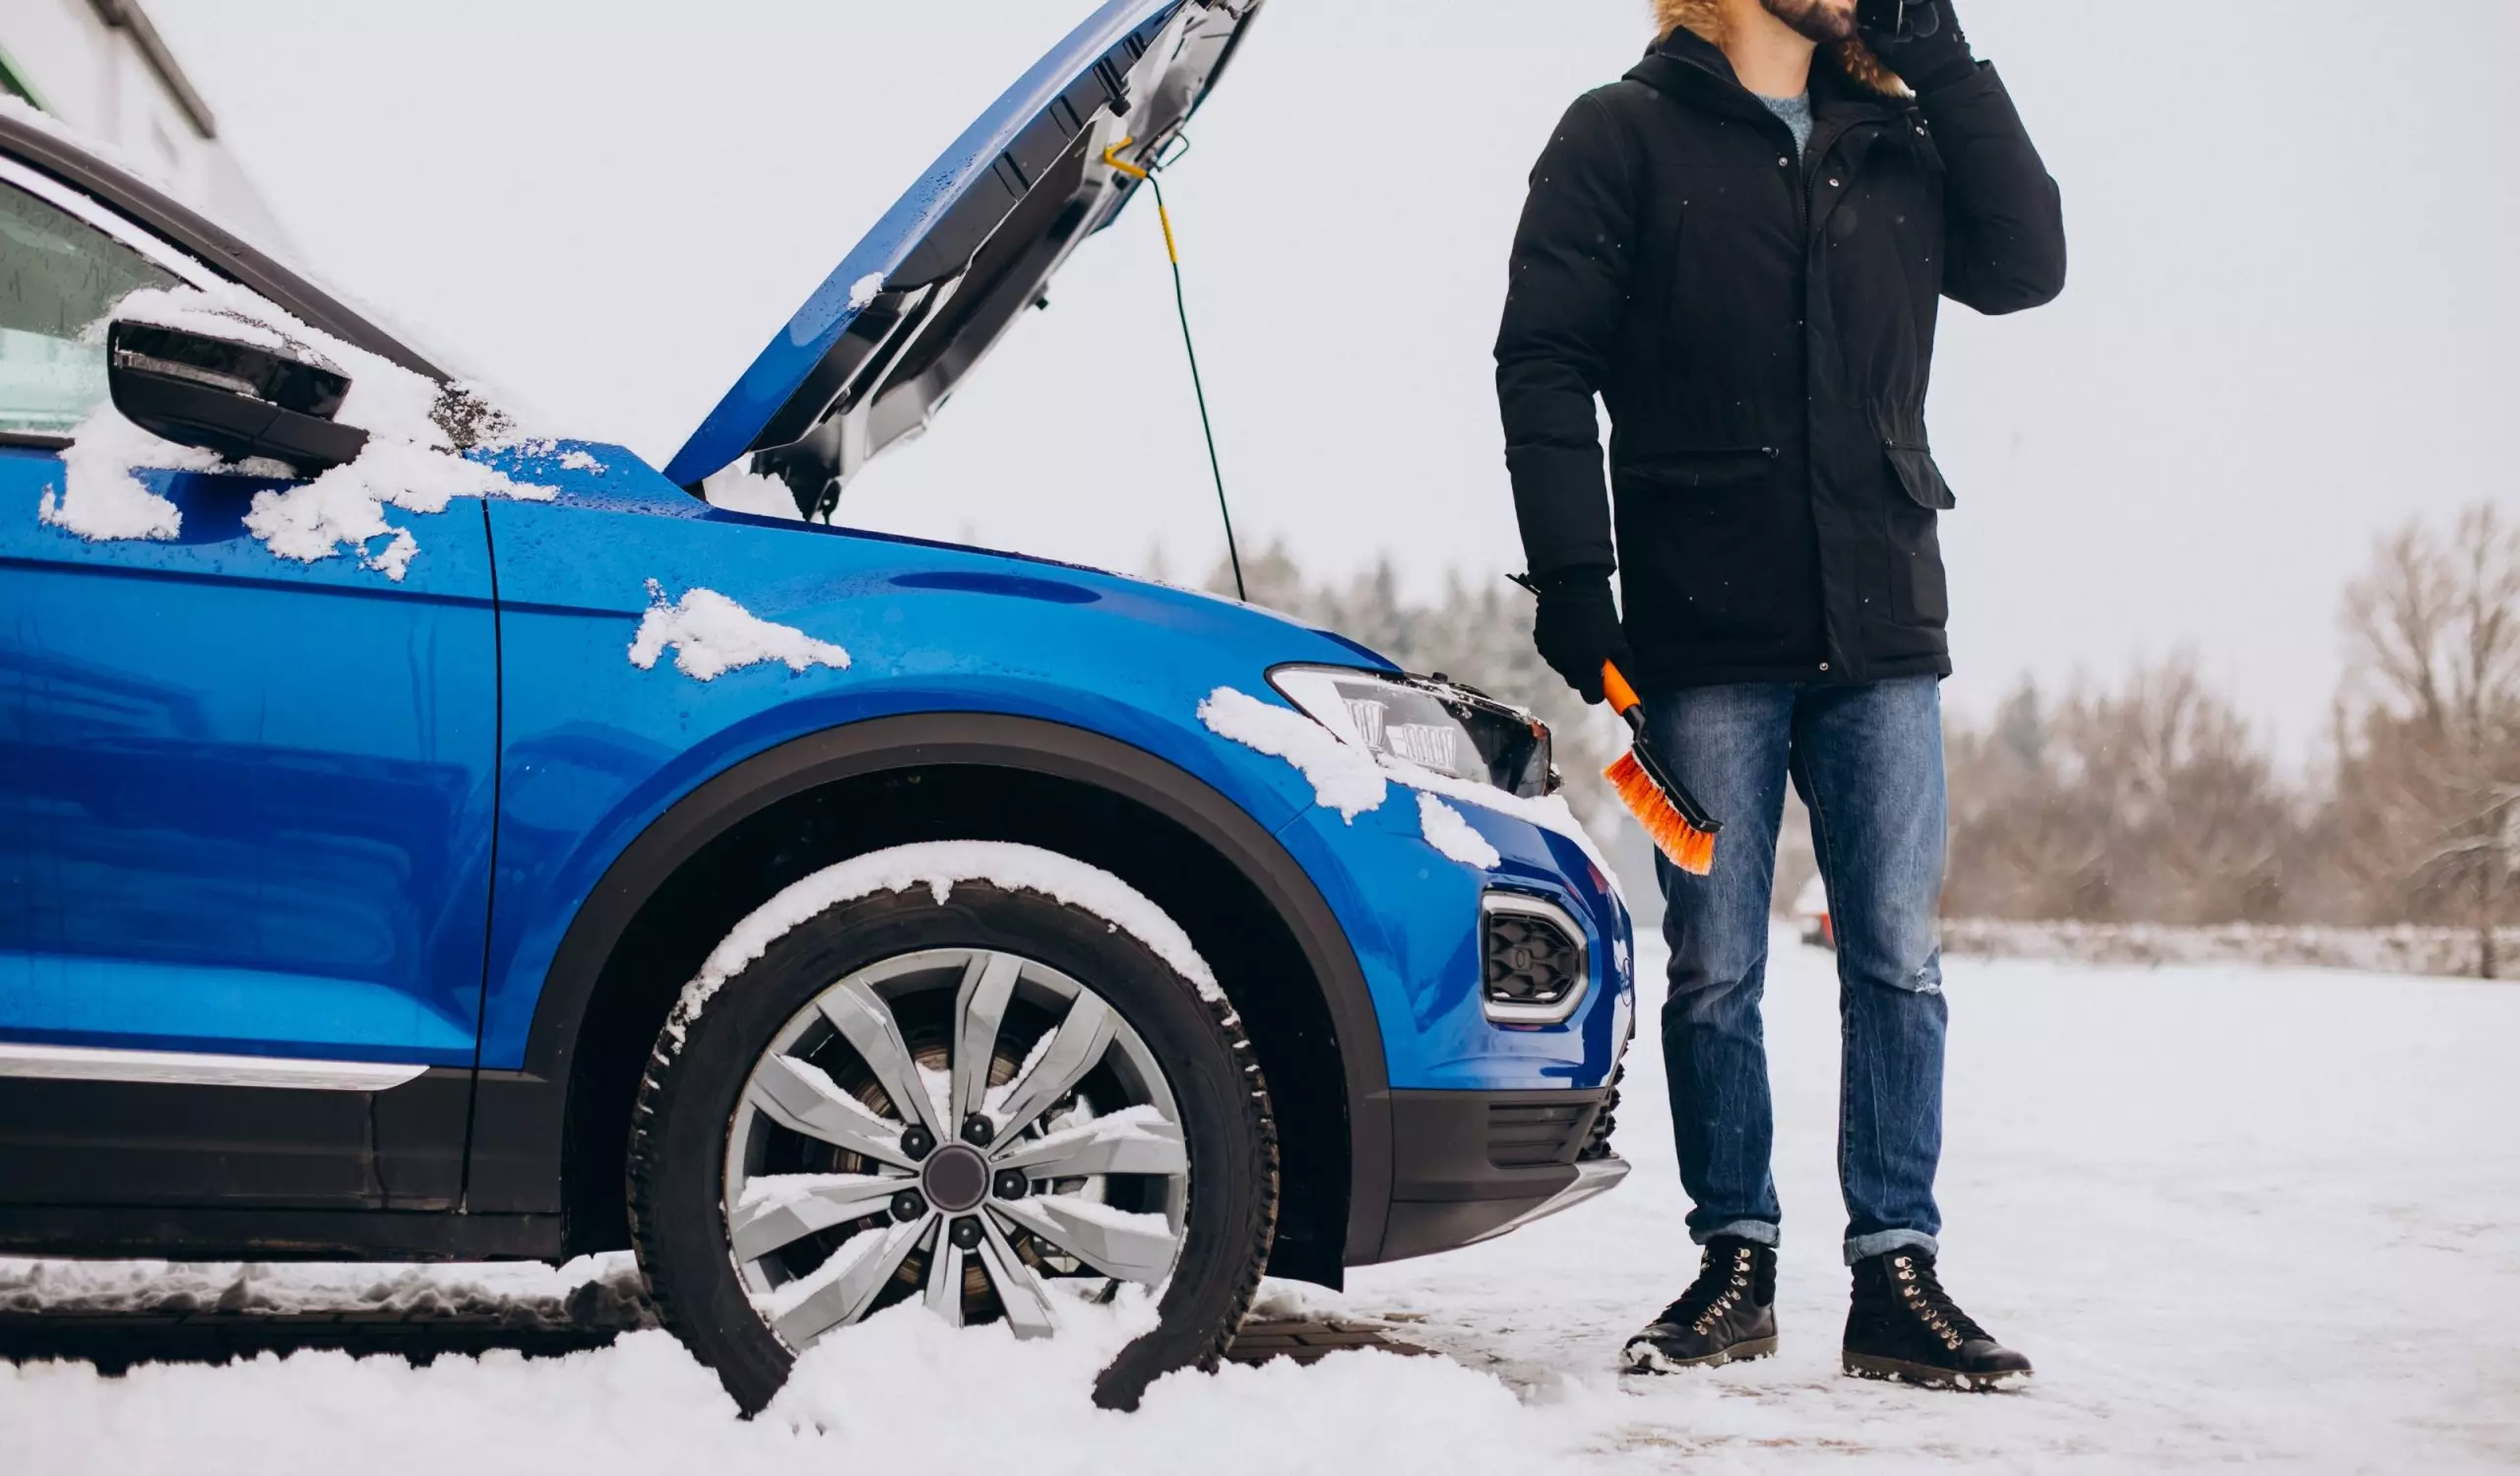 Batería del coche: ¿cómo le afecta el frío?. Imagen que describe a un hombre de pie junto al coche estropeado pidiendo ayuda.